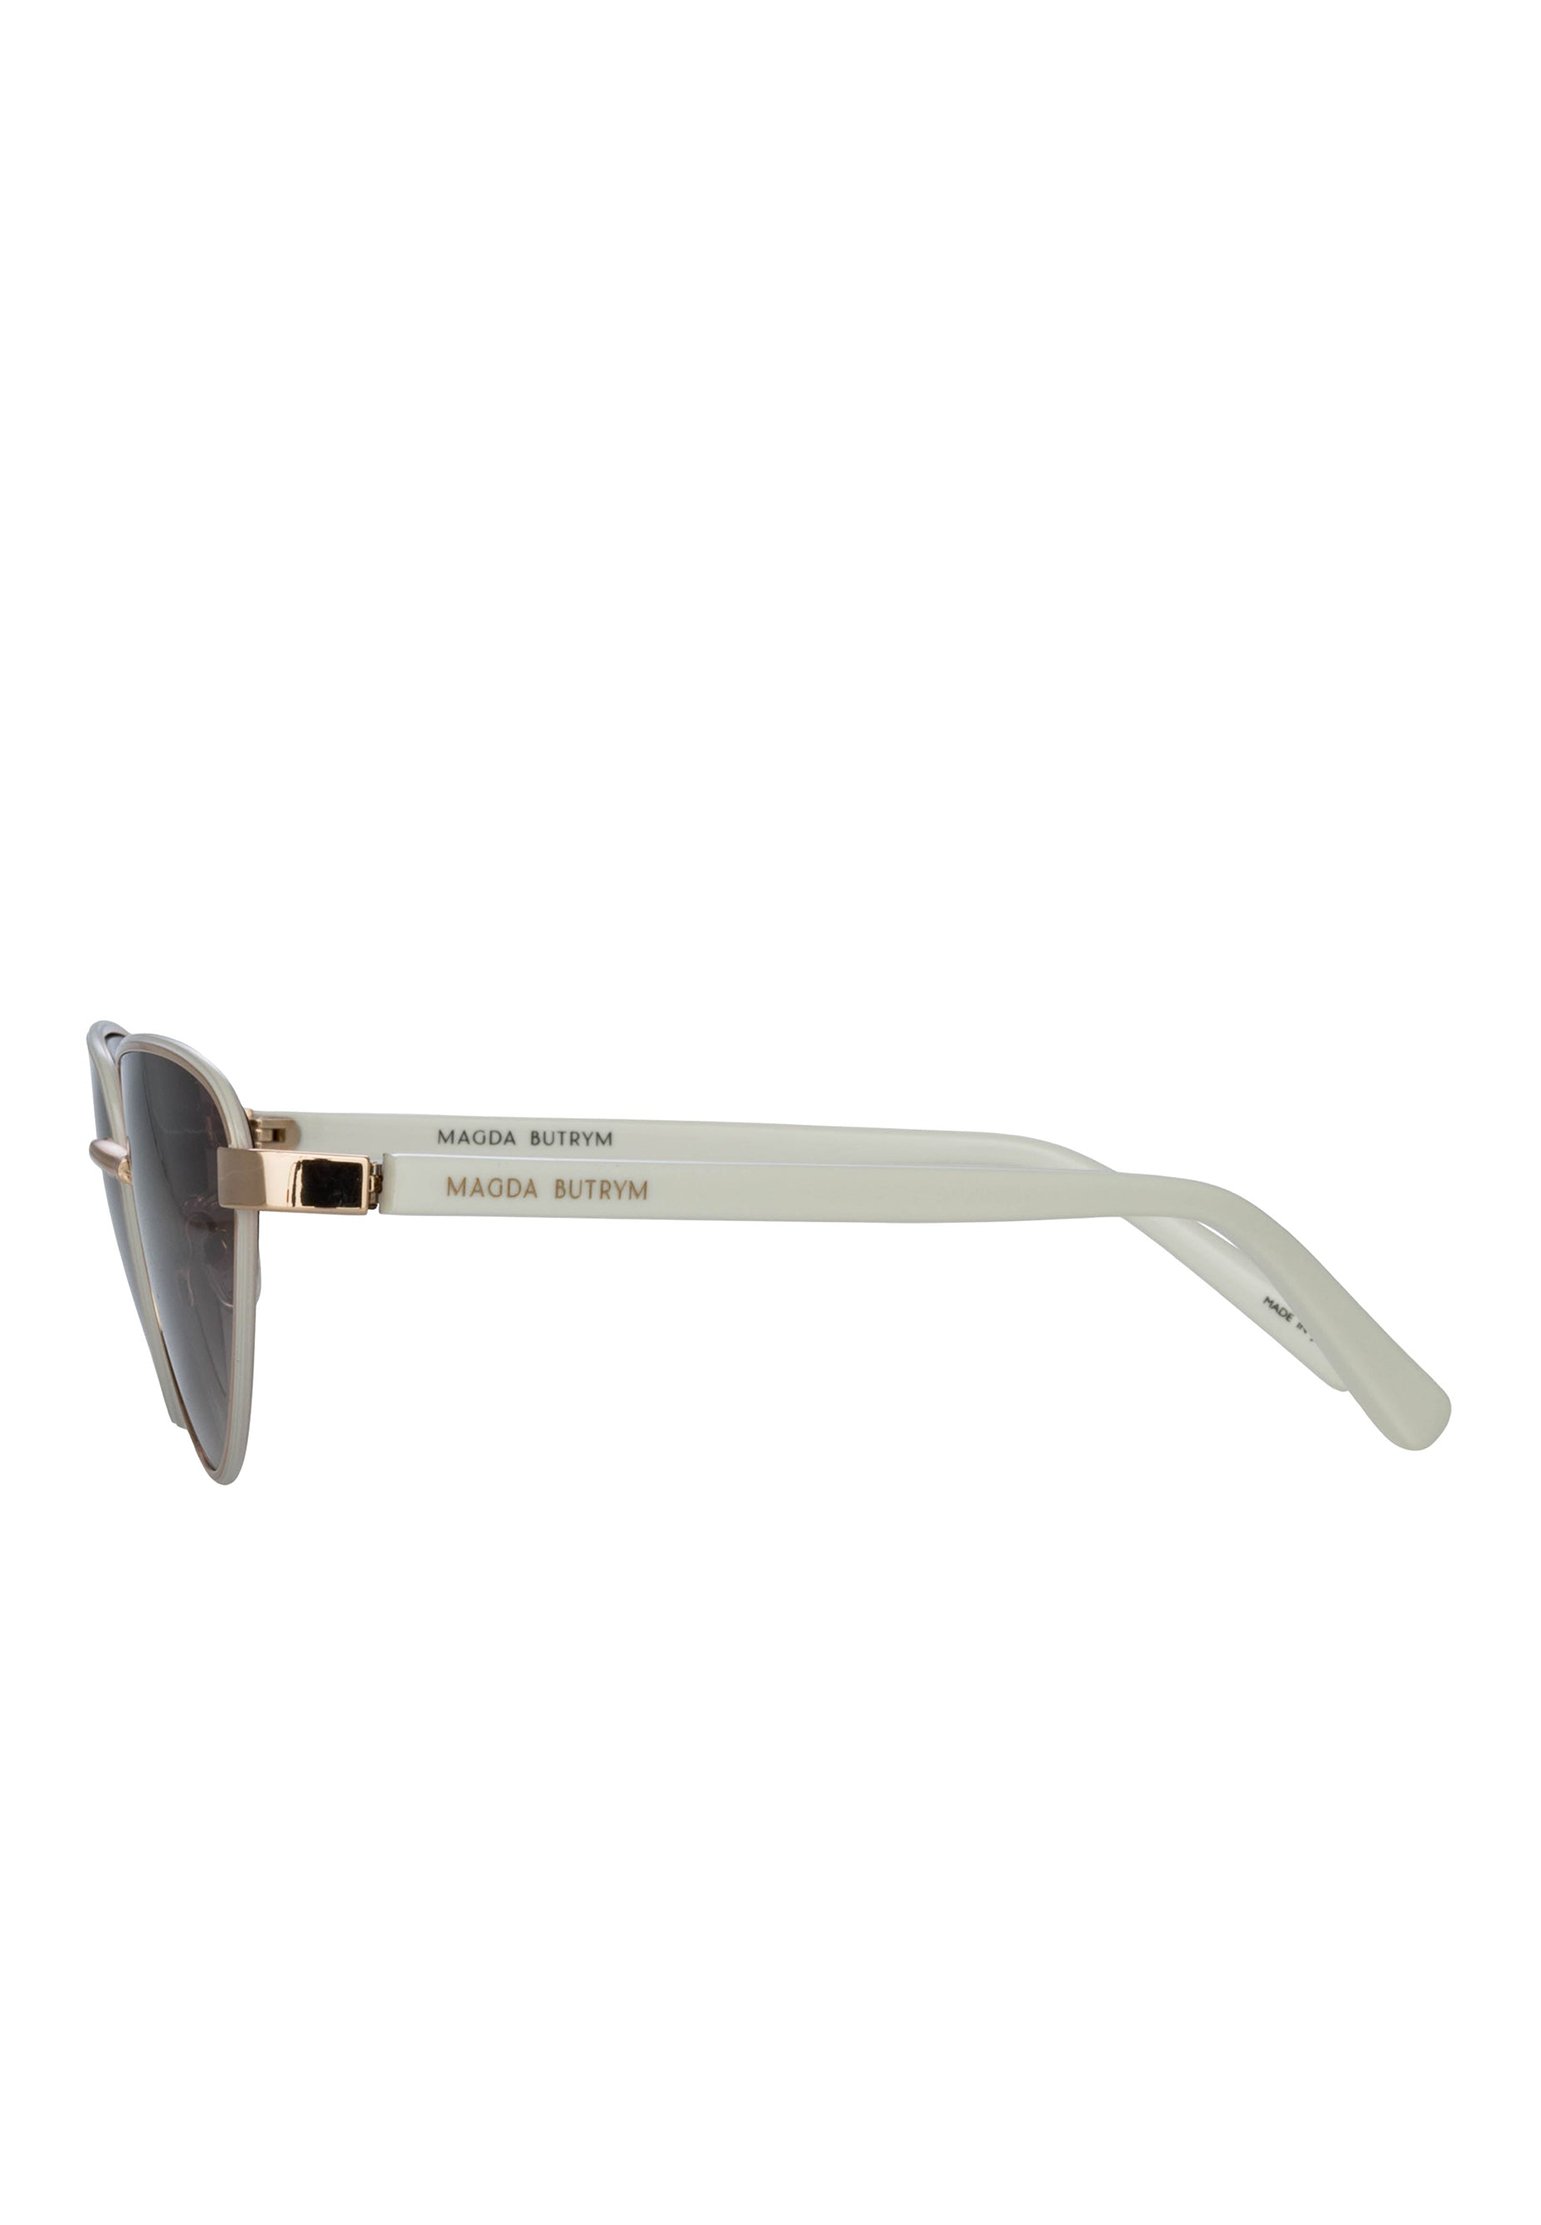 Sunglasses LINDA FARROW Color: white (Code: 2194) in online store Allure